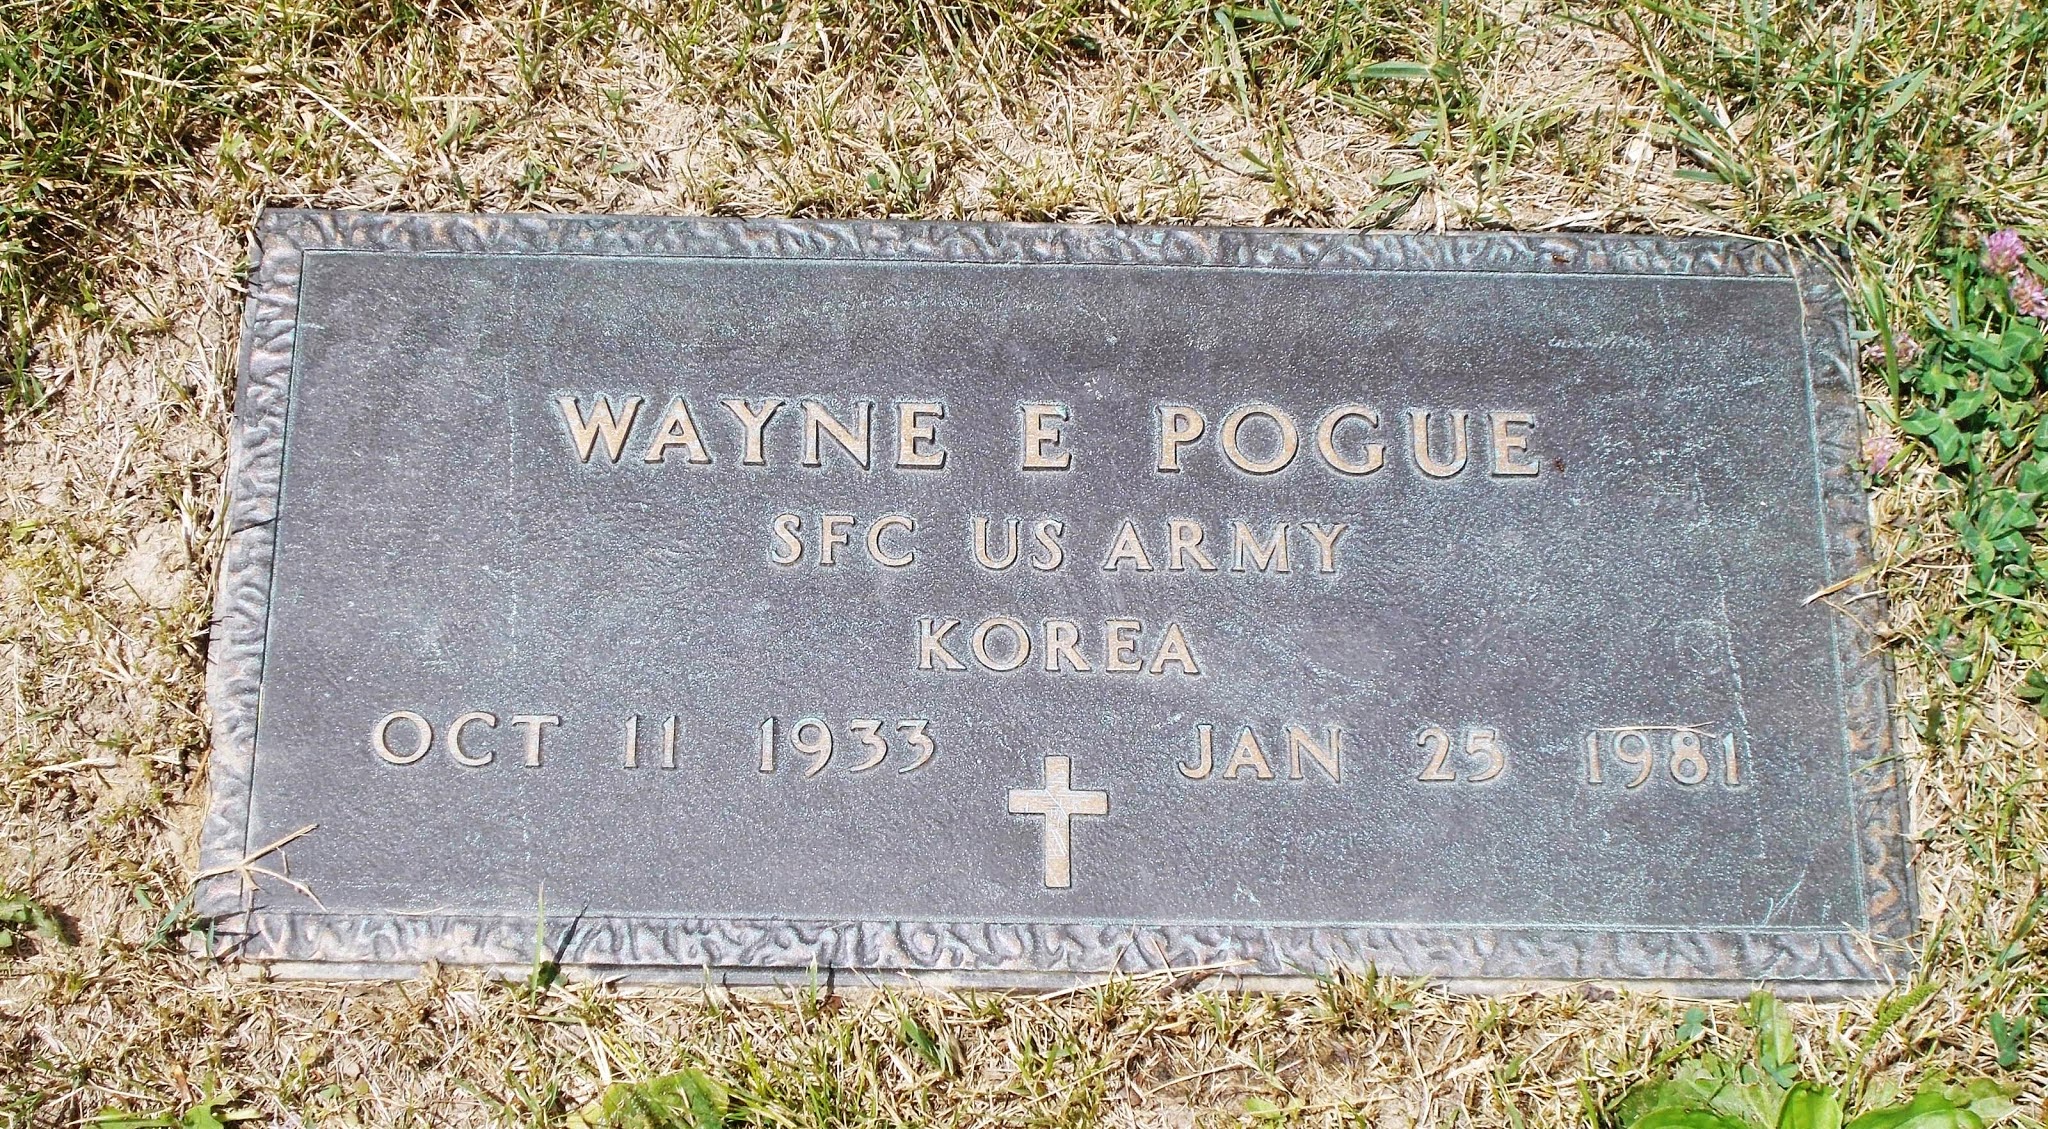 Wayne E Pogue